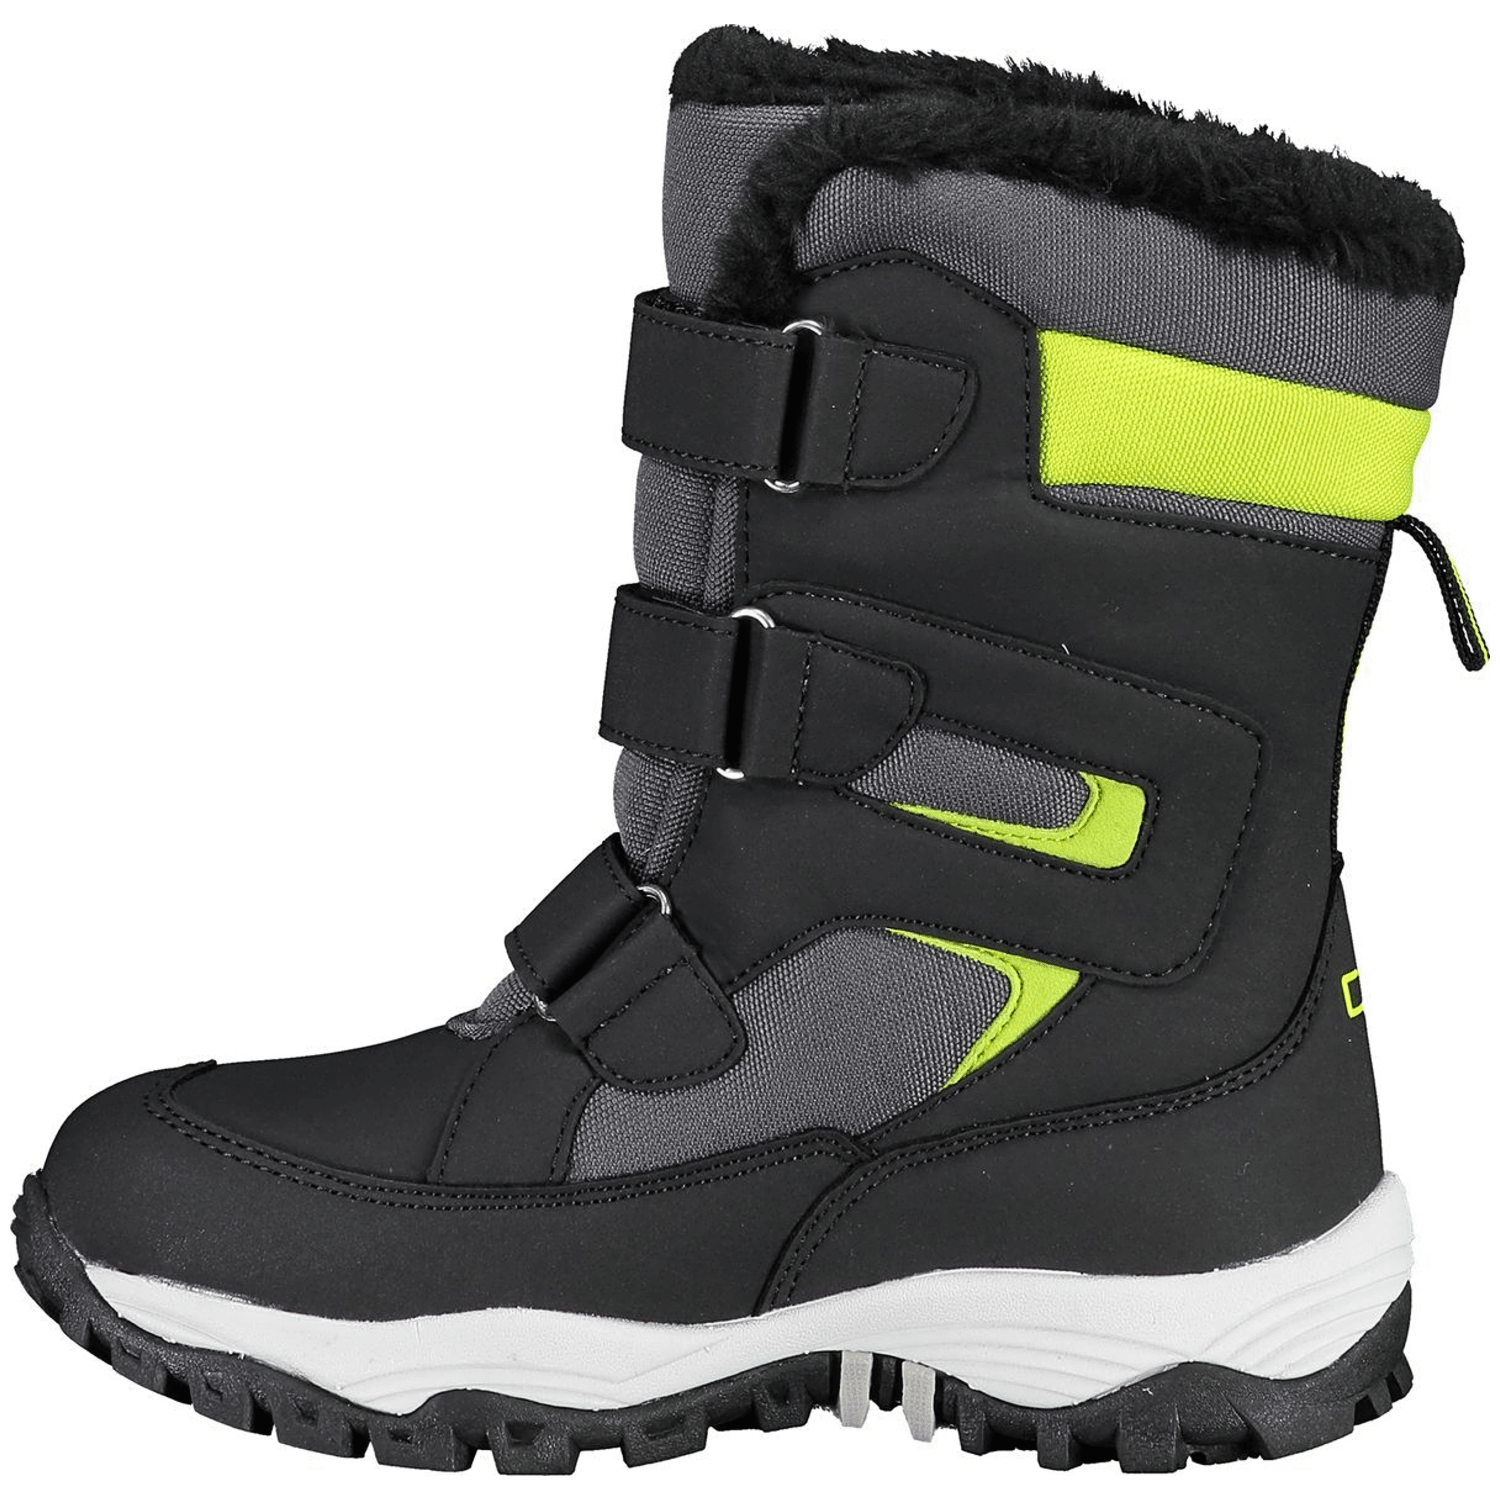 CMP Hexis Snow Boot waterproof Jungen Apres-Schuhe